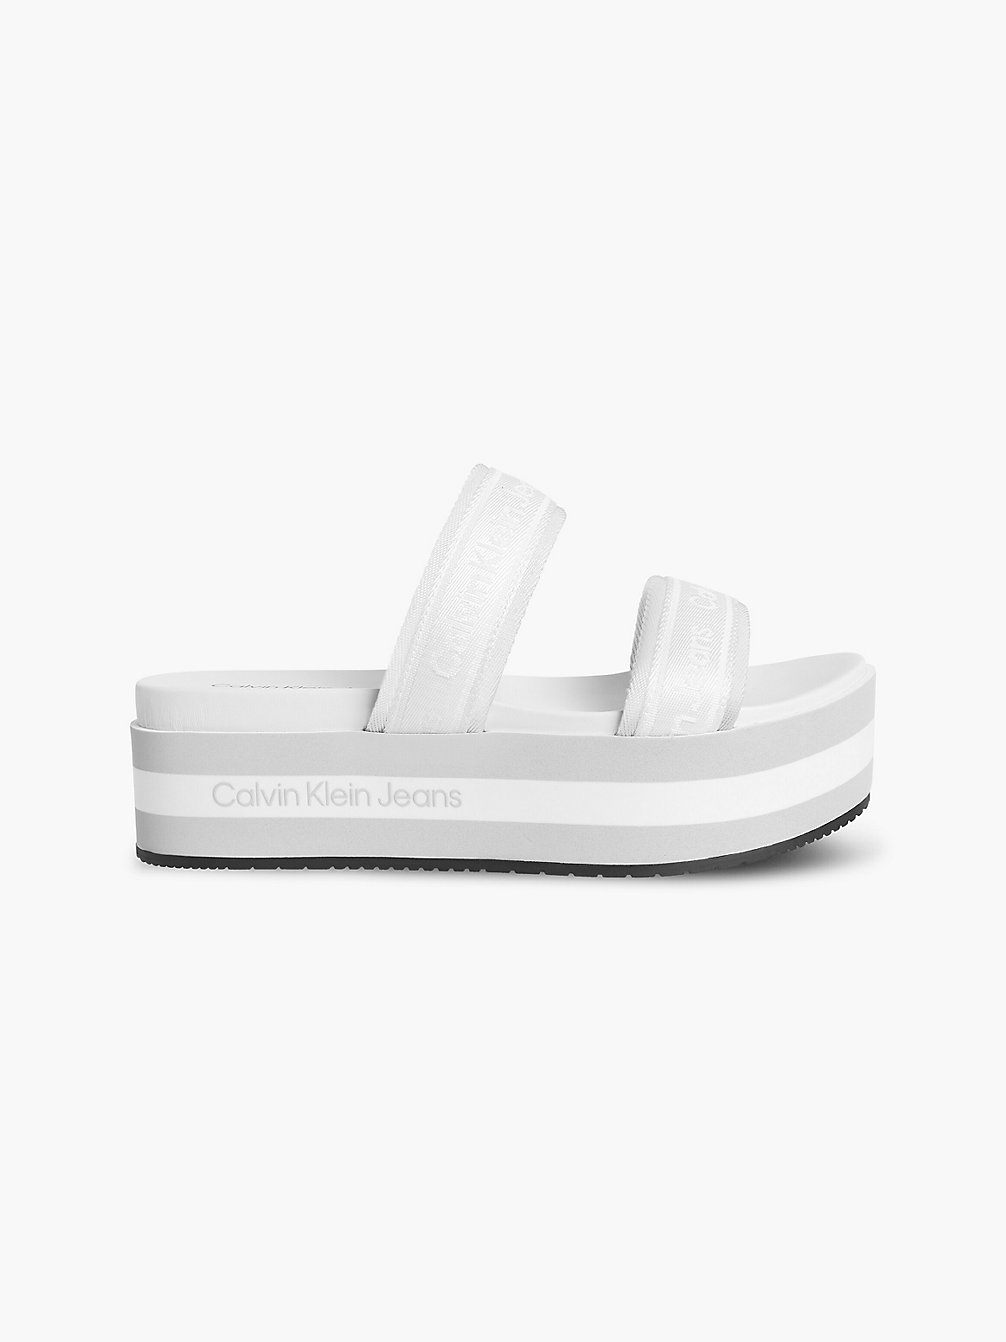 BRIGHT WHITE Recycled Platform Sandals undefined women Calvin Klein